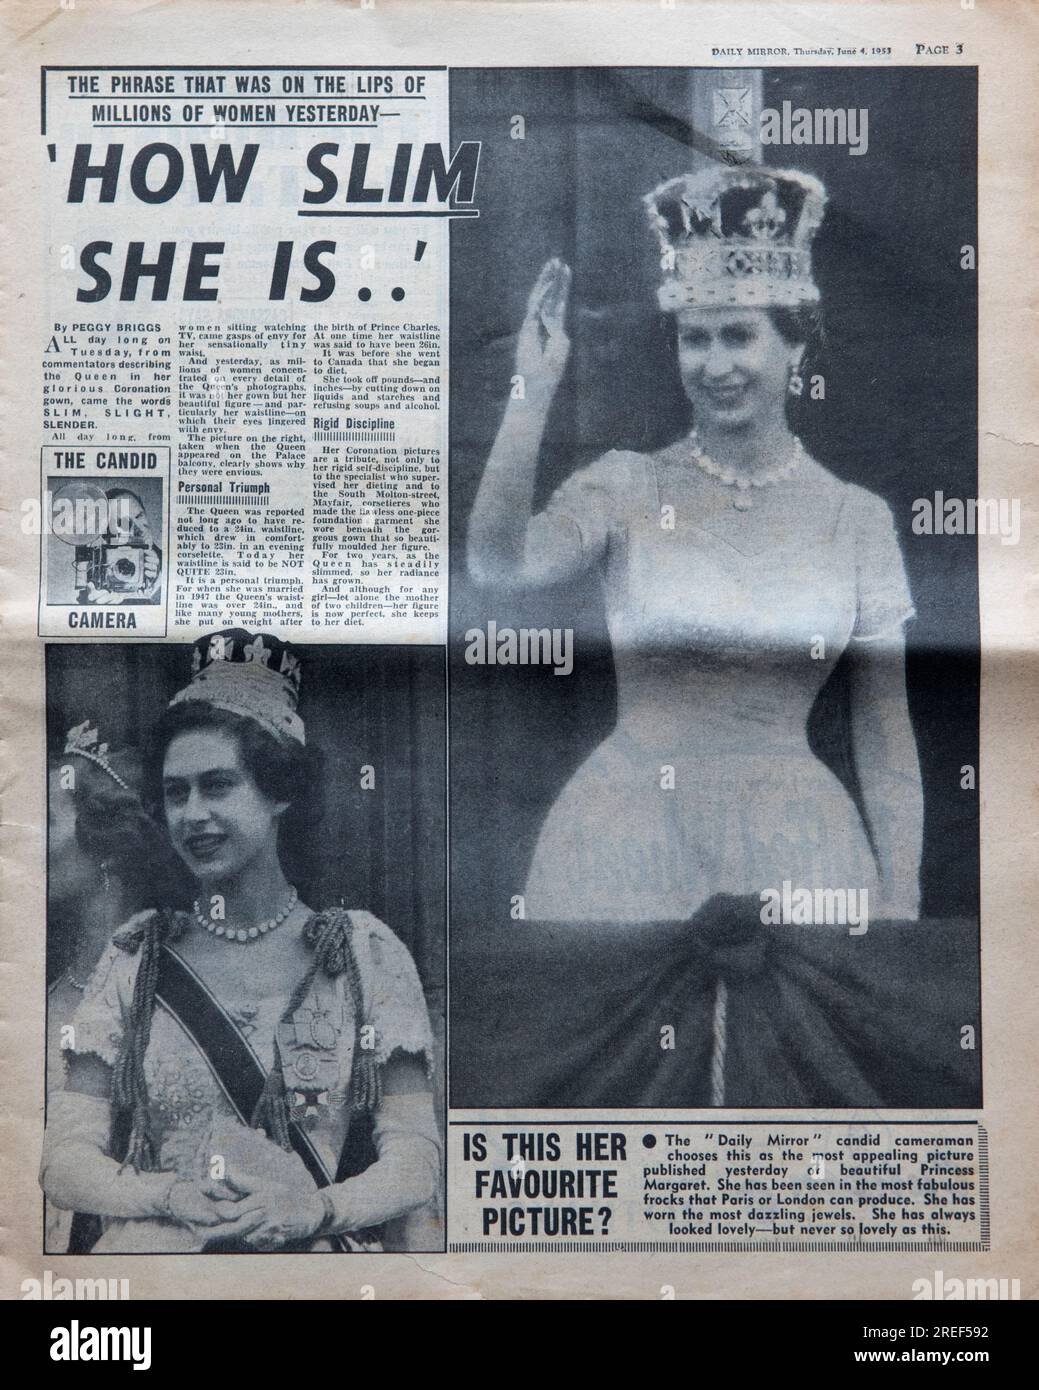 Spécial couronnement de la reine Elizabeth II, 2 juin 1953. Le journal Daily Mirror. nouvelles de la page d'accueil. Daté du 3 juin 1953. Une vieille copie usée d'un tabloïd britannique. Années 1950 Grande-Bretagne Royaume-Uni. Banque D'Images